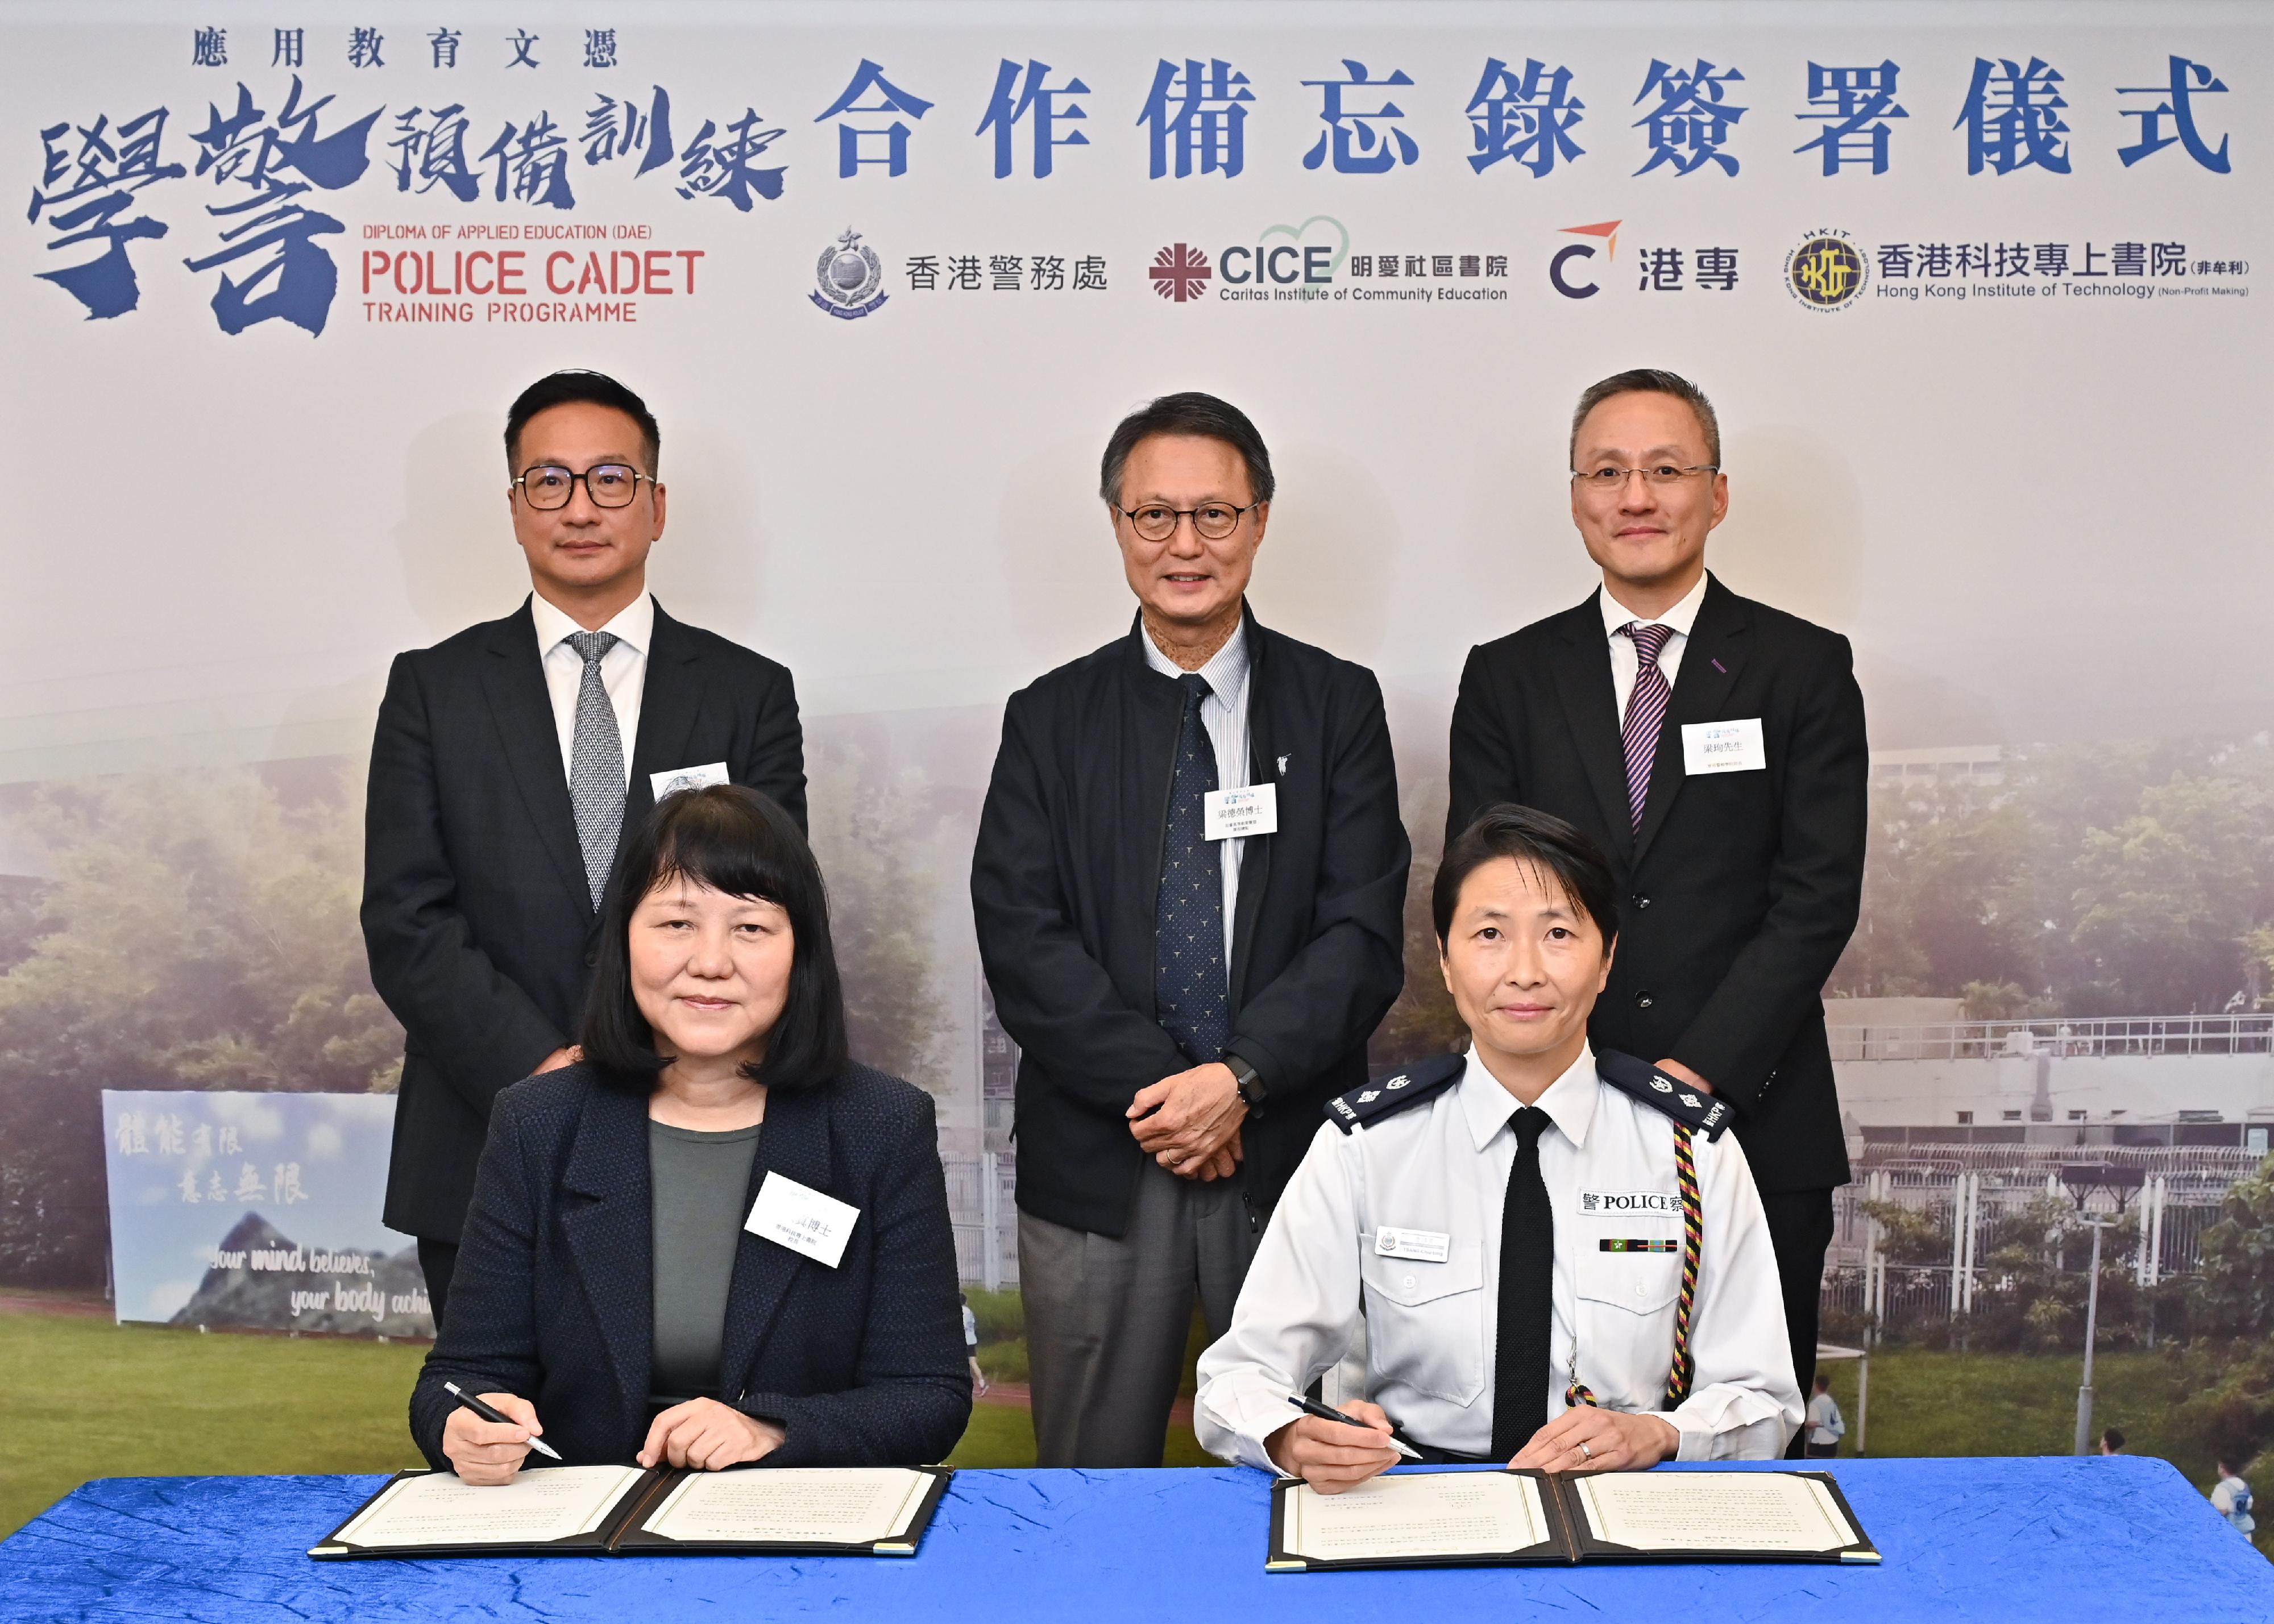 香港警察學院與三間專上院校合辦「應用教育文憑--學警預備訓練」課程